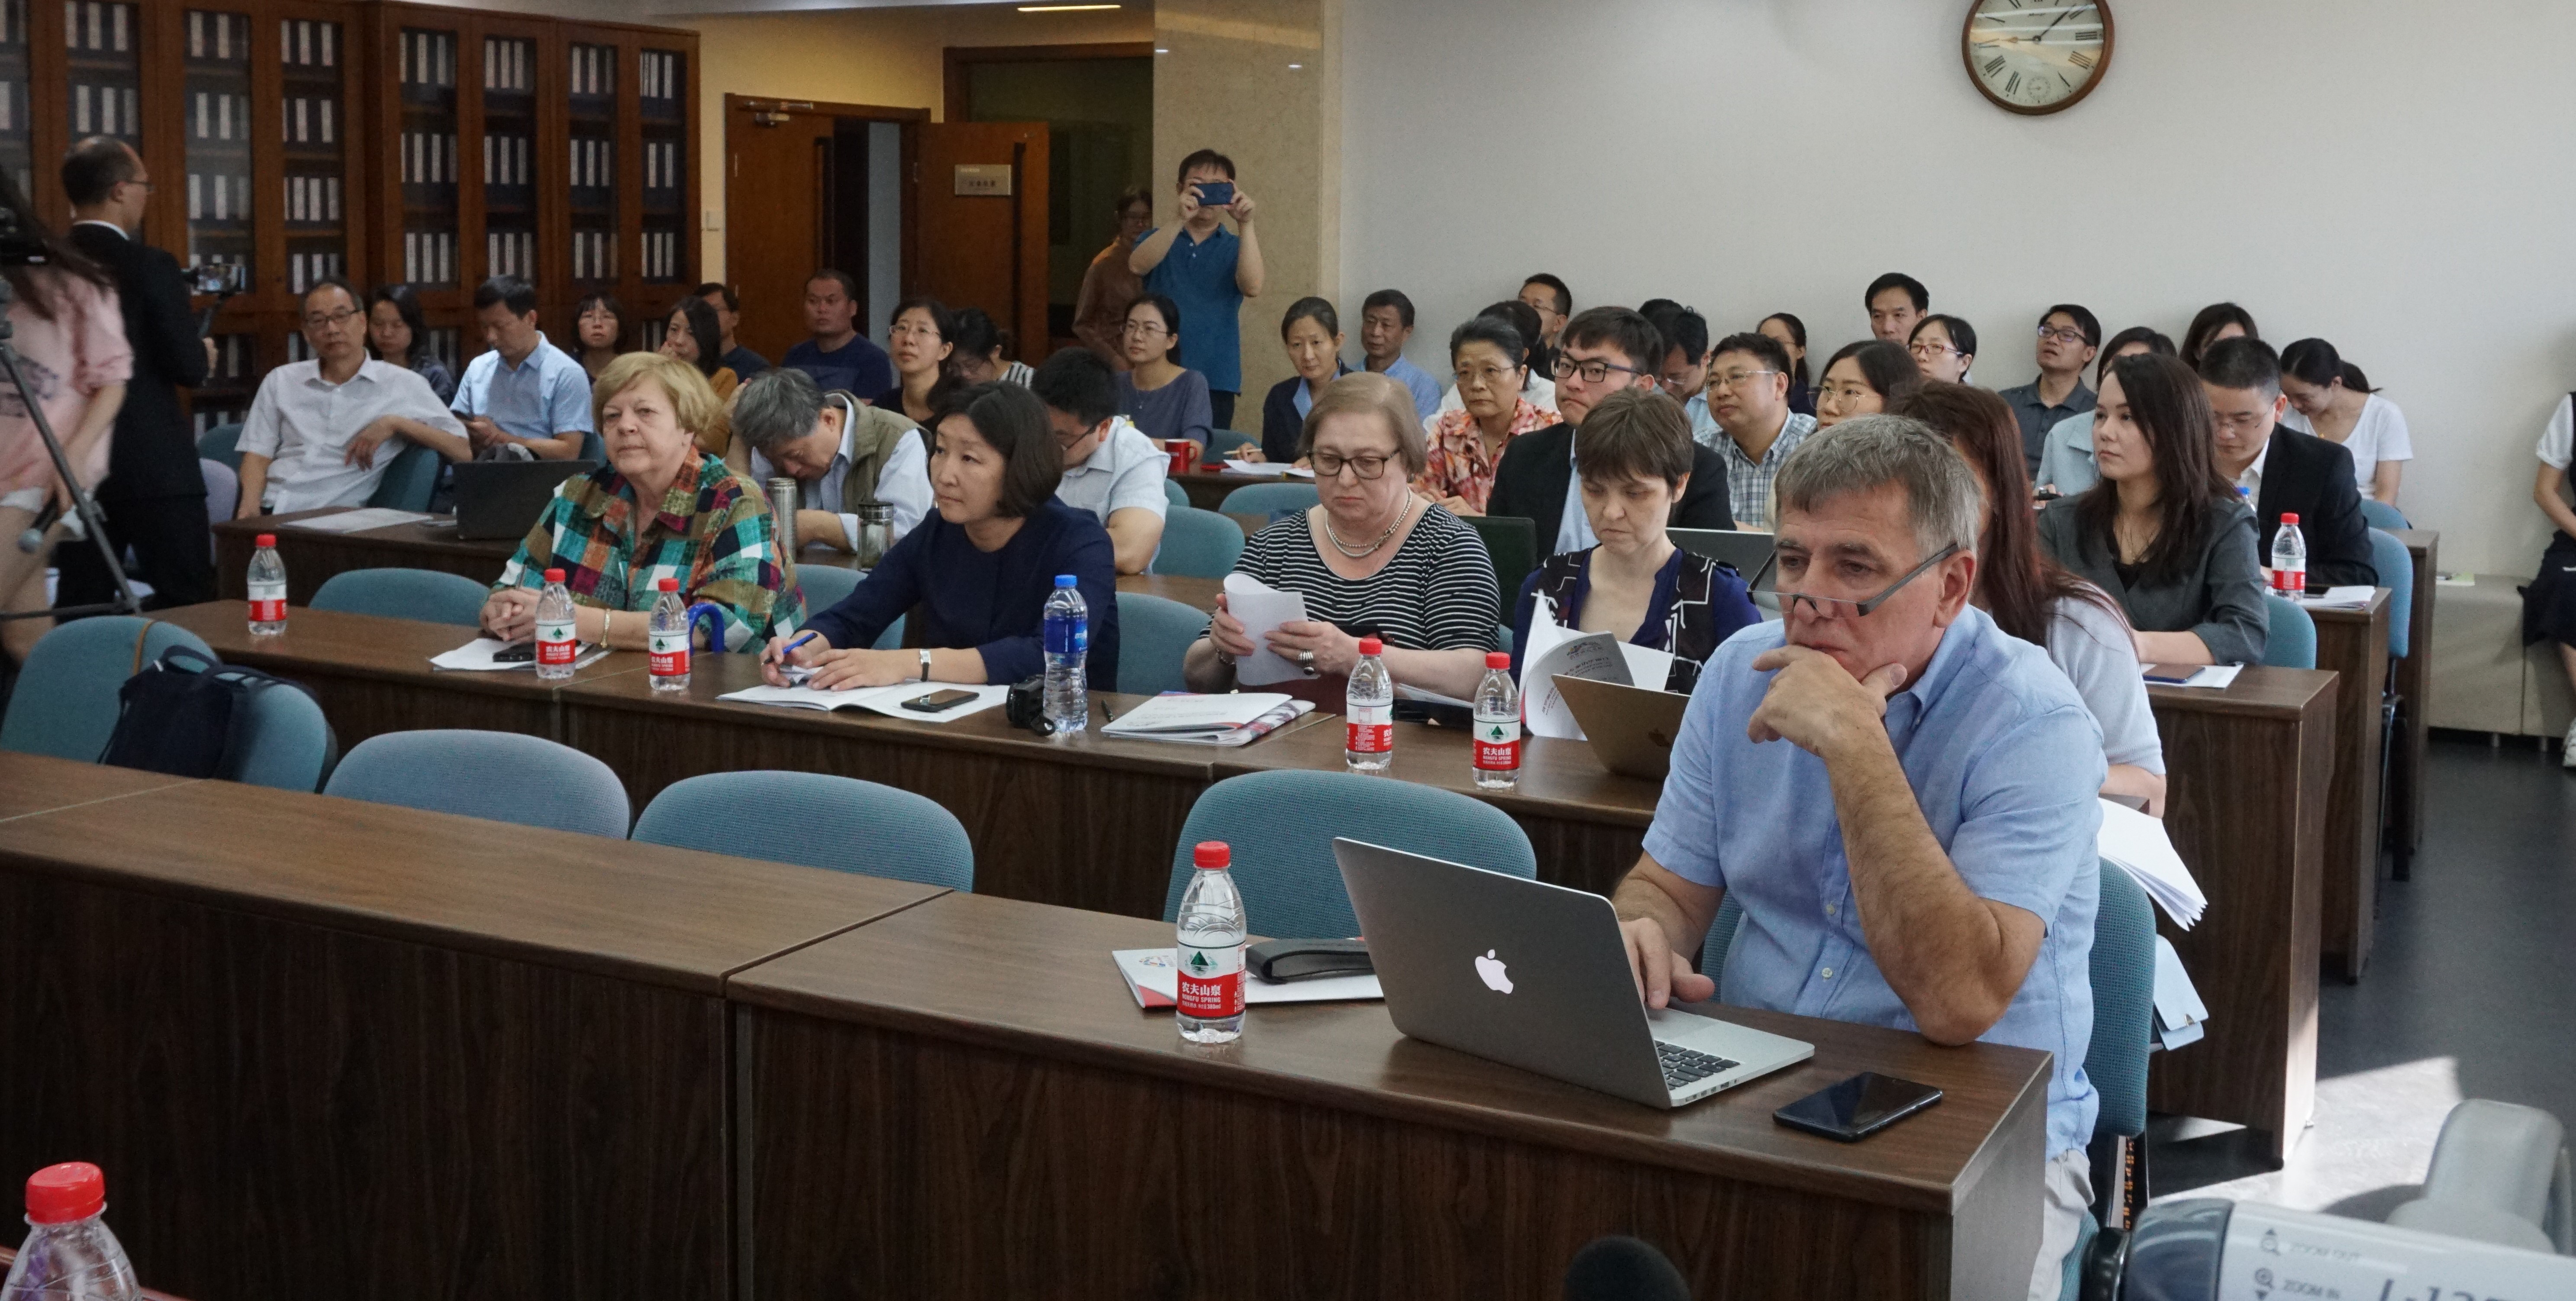 Визит делегации в Институт языкознания Китайской академии общественных наук